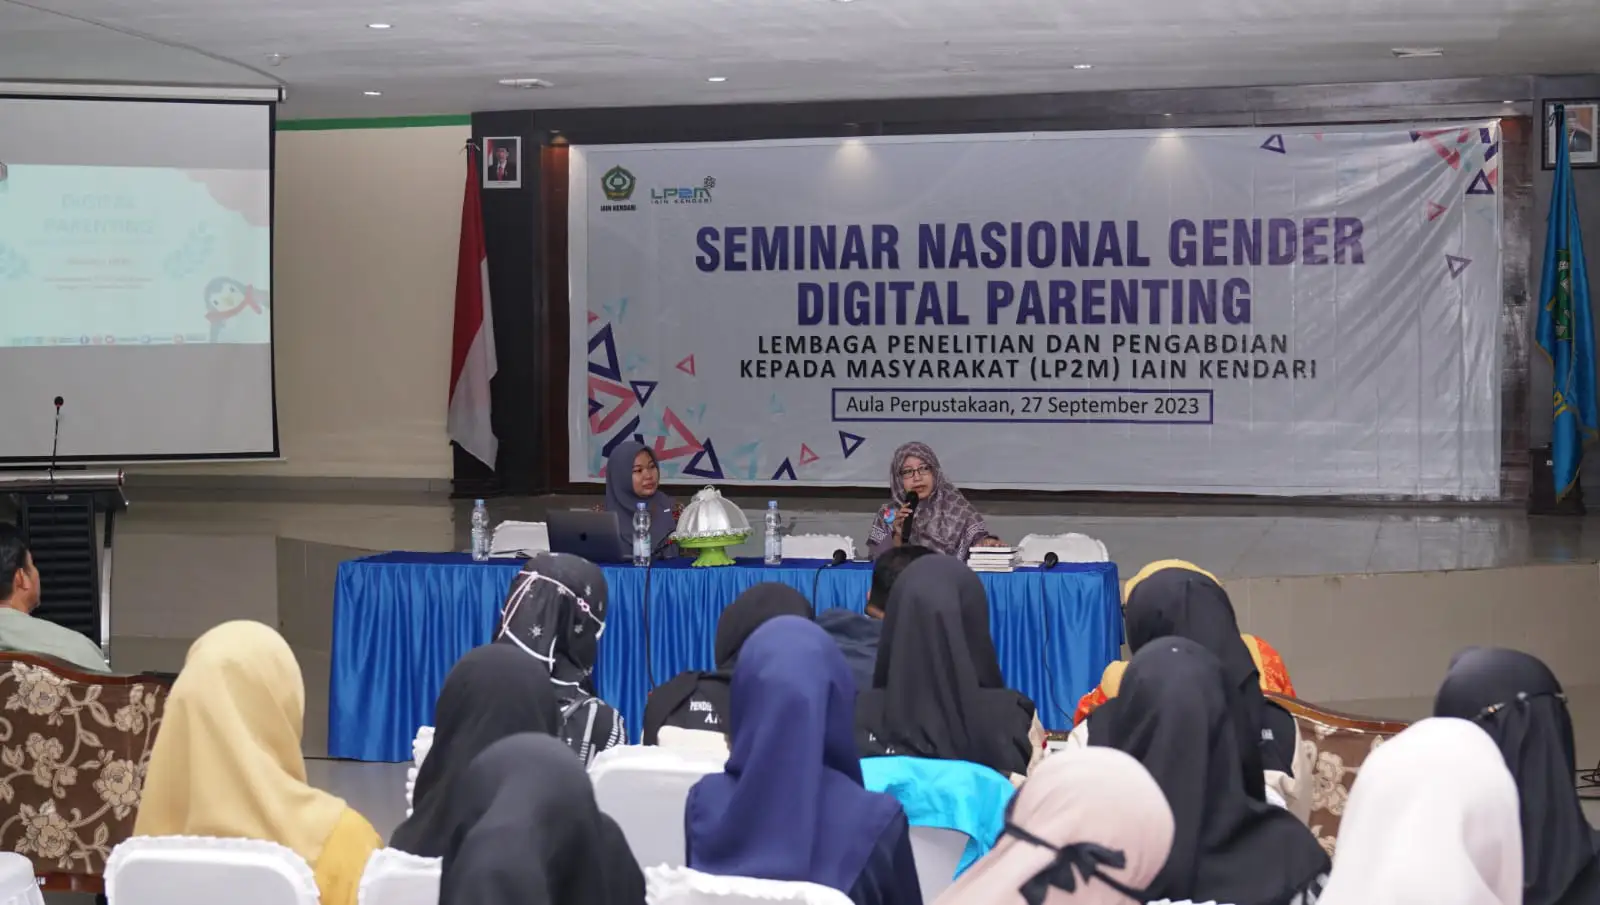 LP2M IAIN Kendari Gelar Seminar Nasional Gender, Bahas Cara Didik Anak di Era Digital